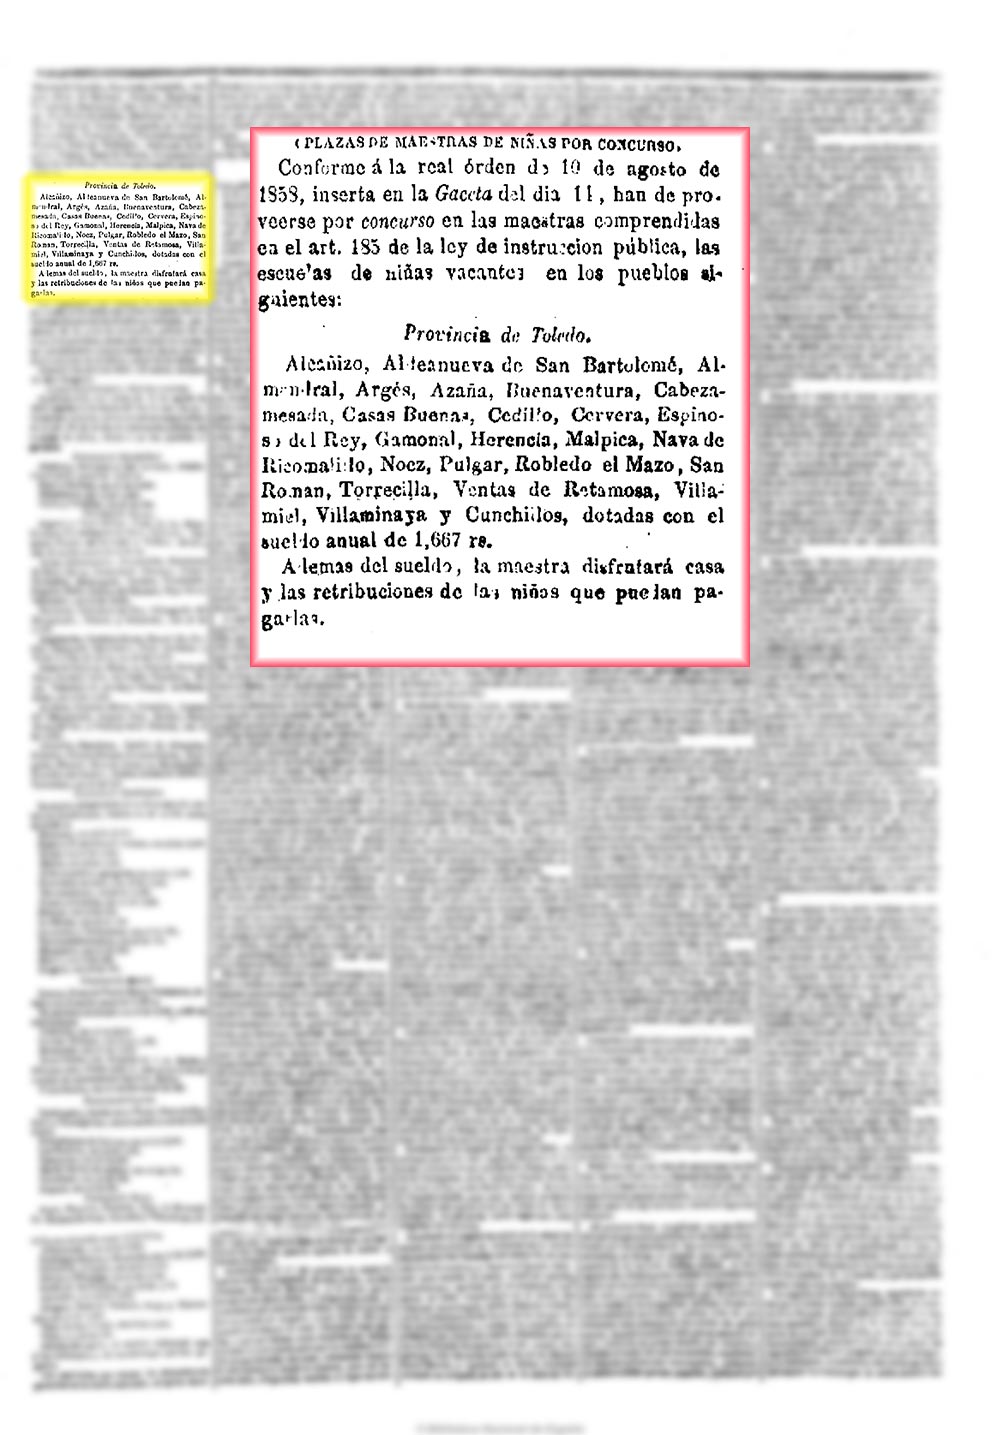 La Esperanza 12 4 1859, página 3. Concurso para la plaza de maestra de niñas en Malpica